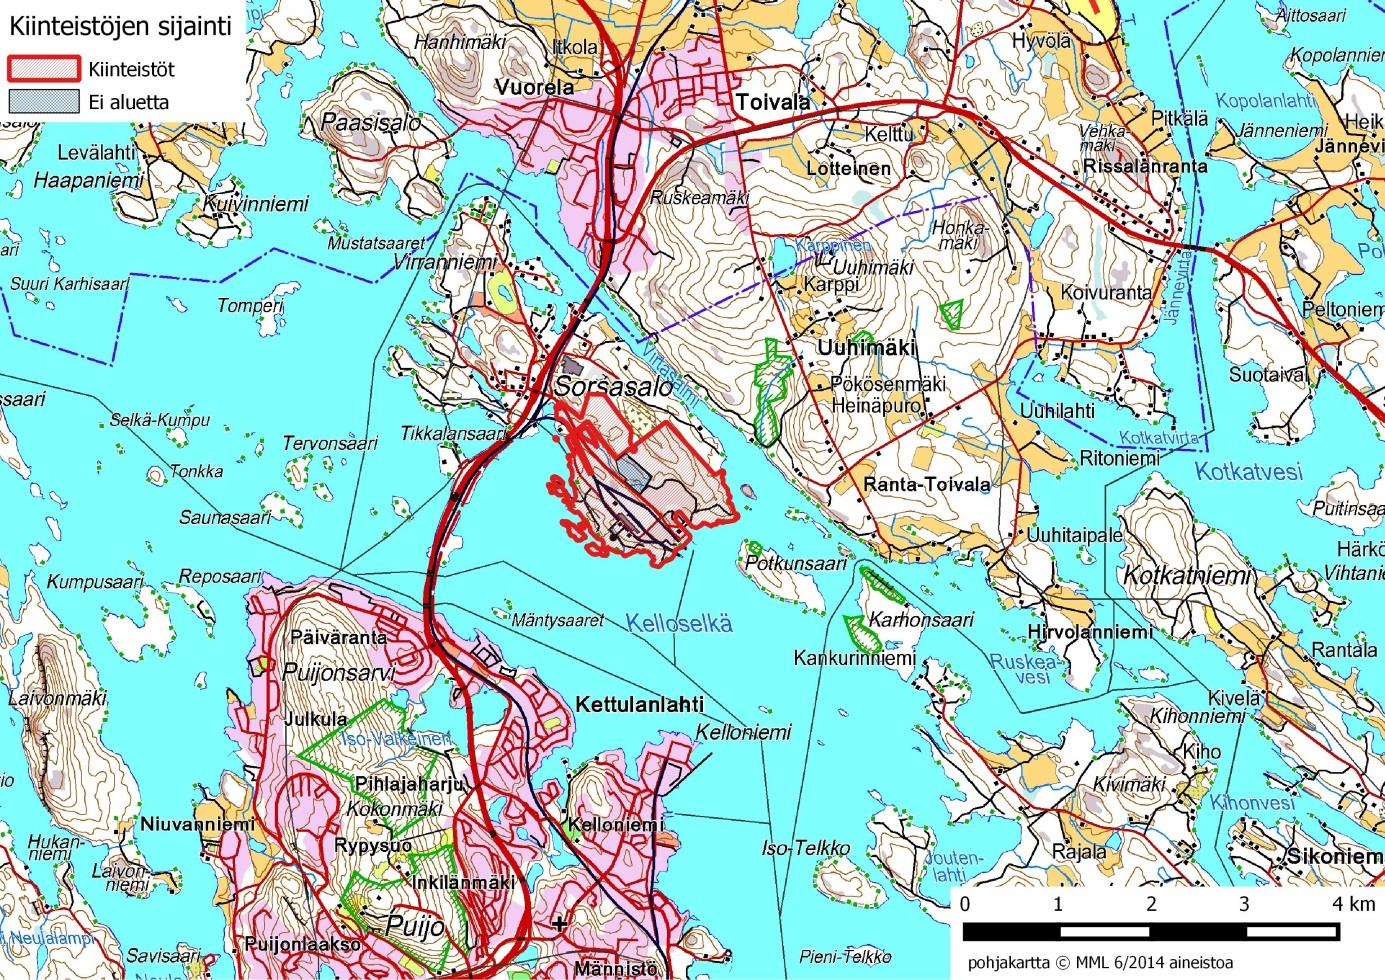 6 (38) 2 TIEDOT LAITOKSESTA J A LAITOSALUEESTA 2.1 Laitos- ja sen lähialue kokonaisuutena Tehdas sijaitsee noin 10 km Kuopion kaupungista pohjoiseen Sorsasalon saarella.